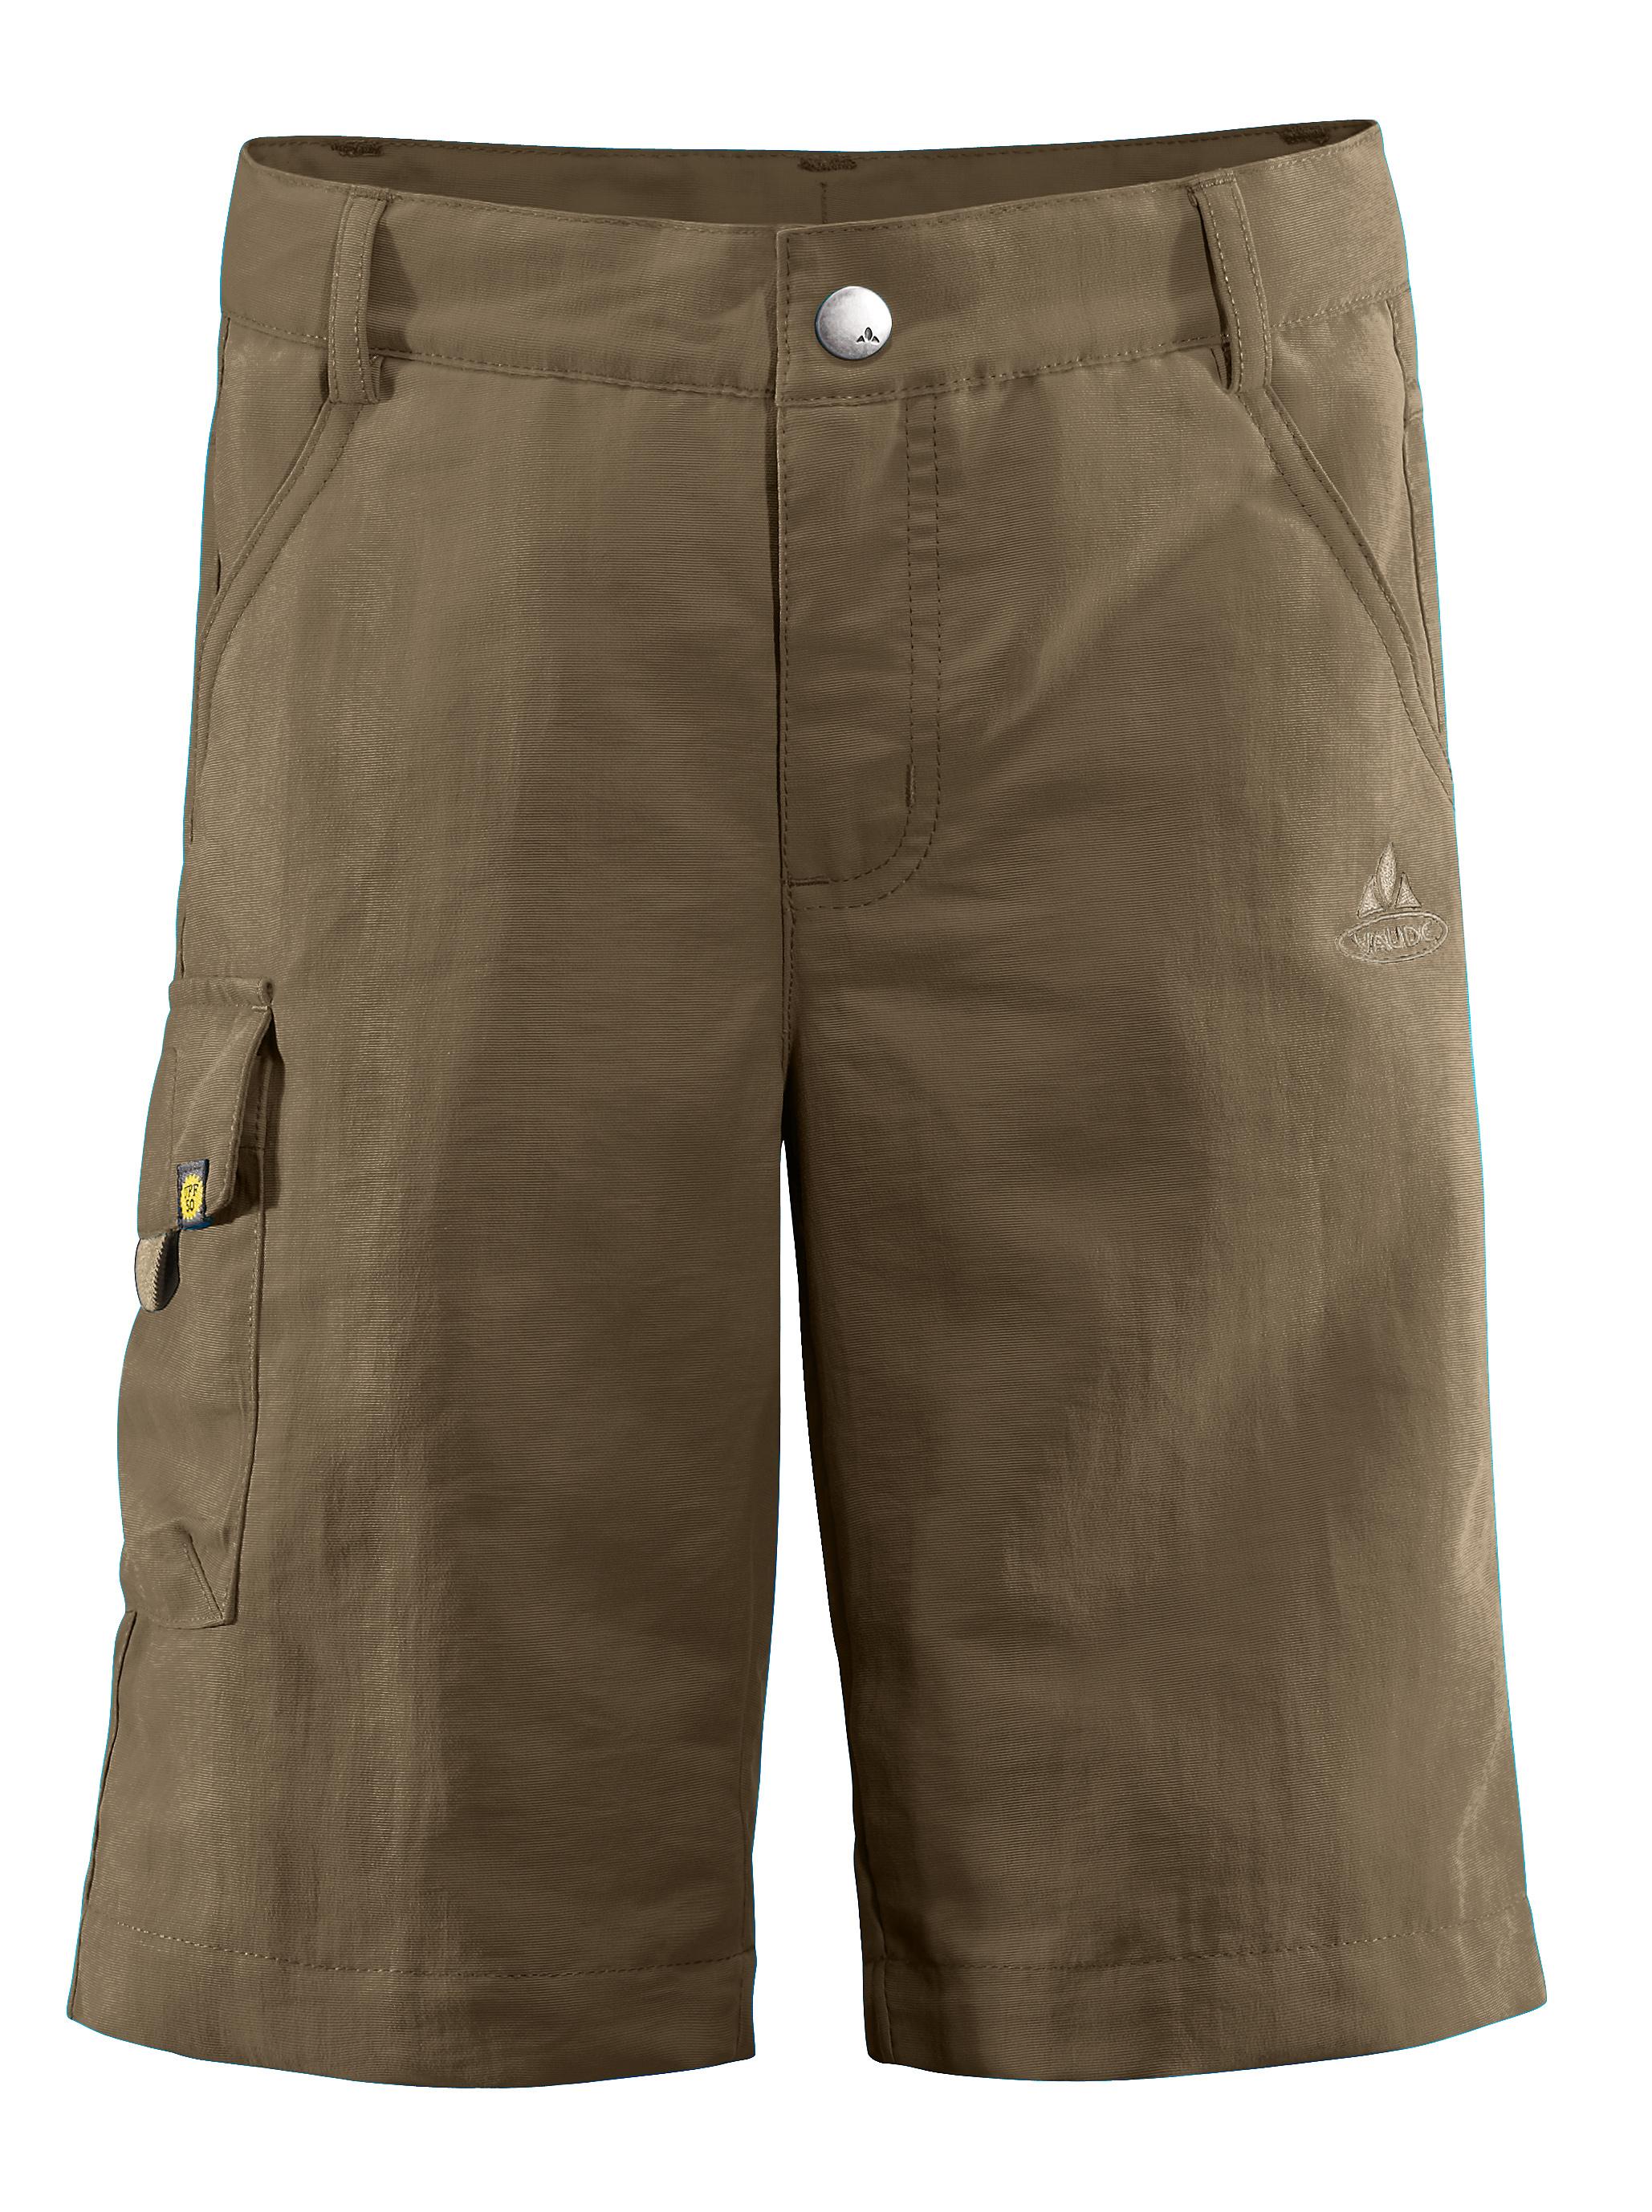 Foto Pantalones cortos Vaude Detective wood marrón para niño , 170/176